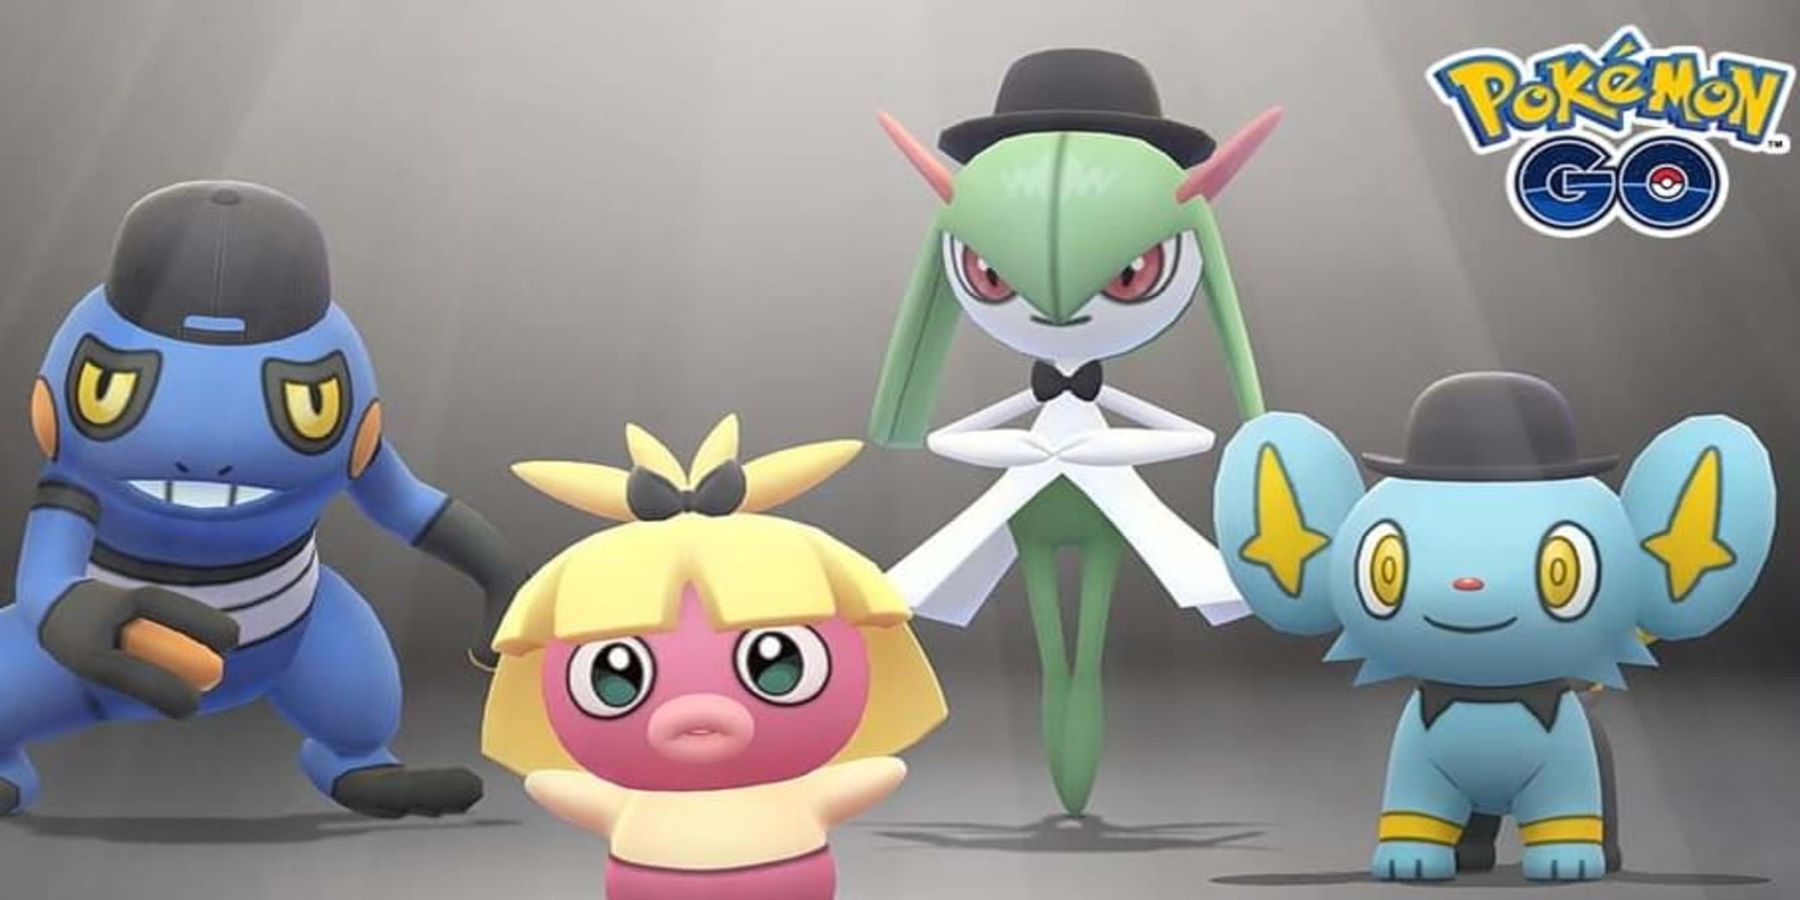 L’événement de la Fashion Week de Pokemon Go met en évidence un défaut de personnalisation des personnages